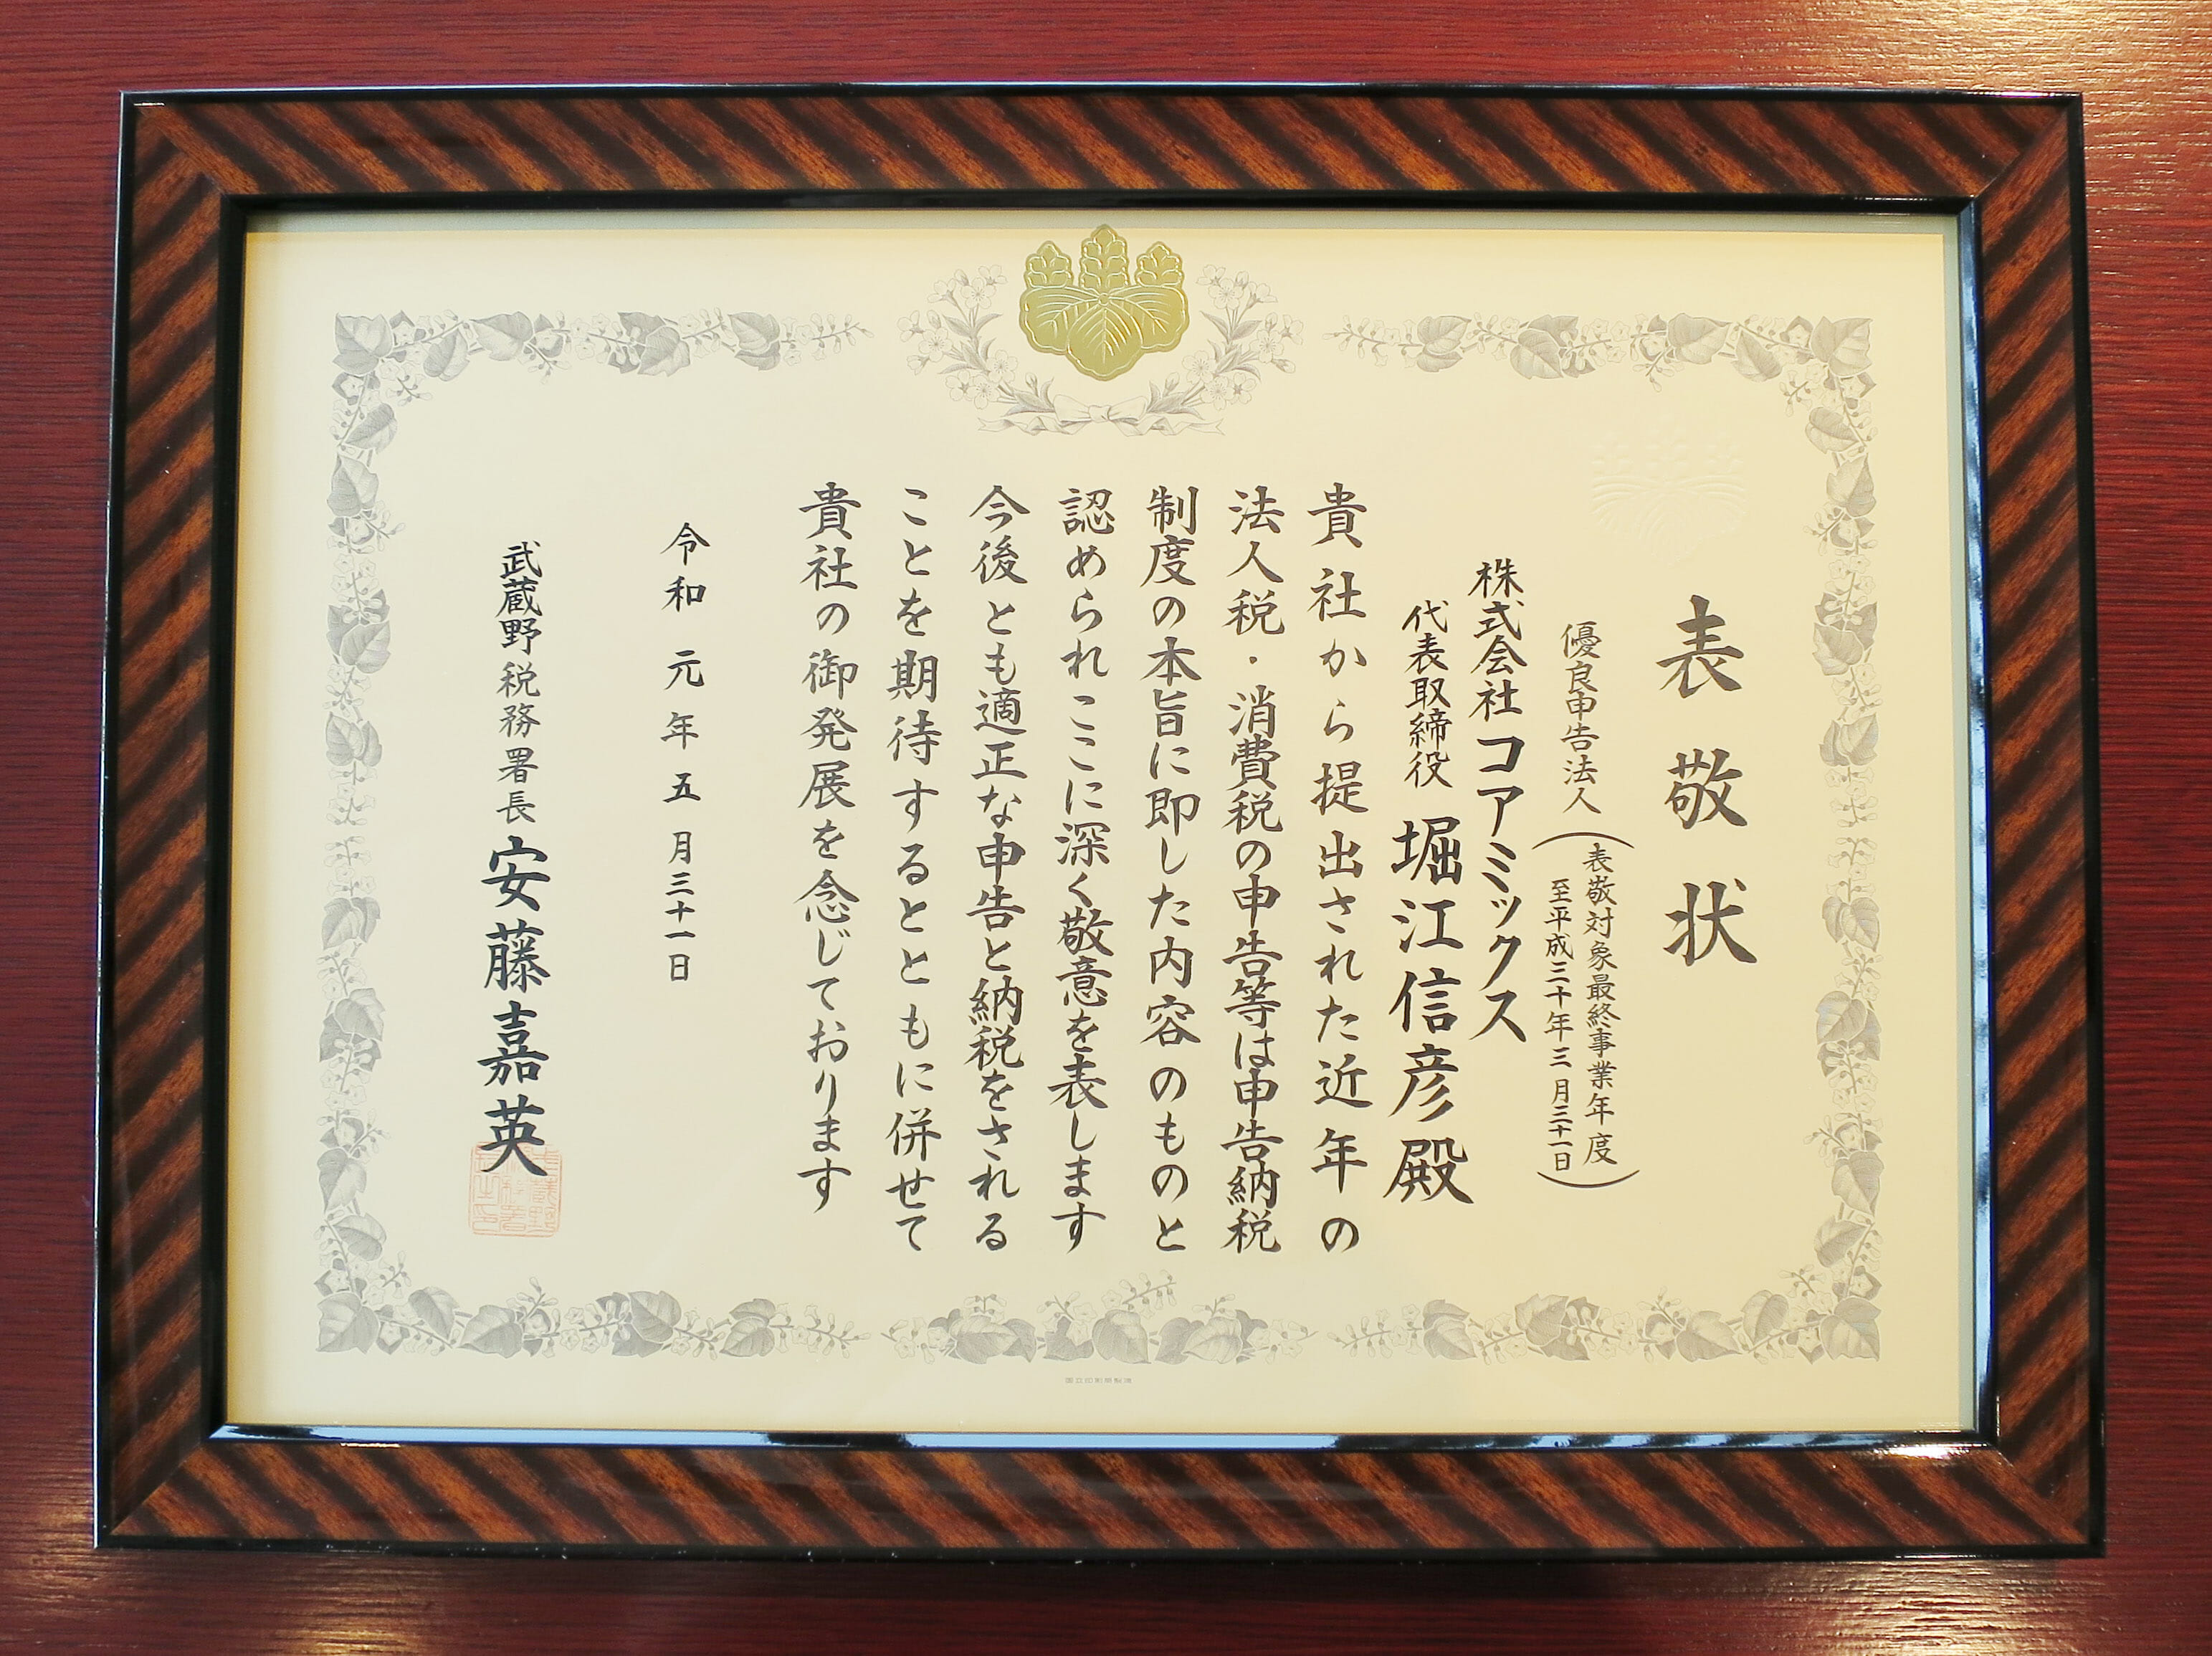 武蔵野税務署より優良申告法人として表敬を受けました